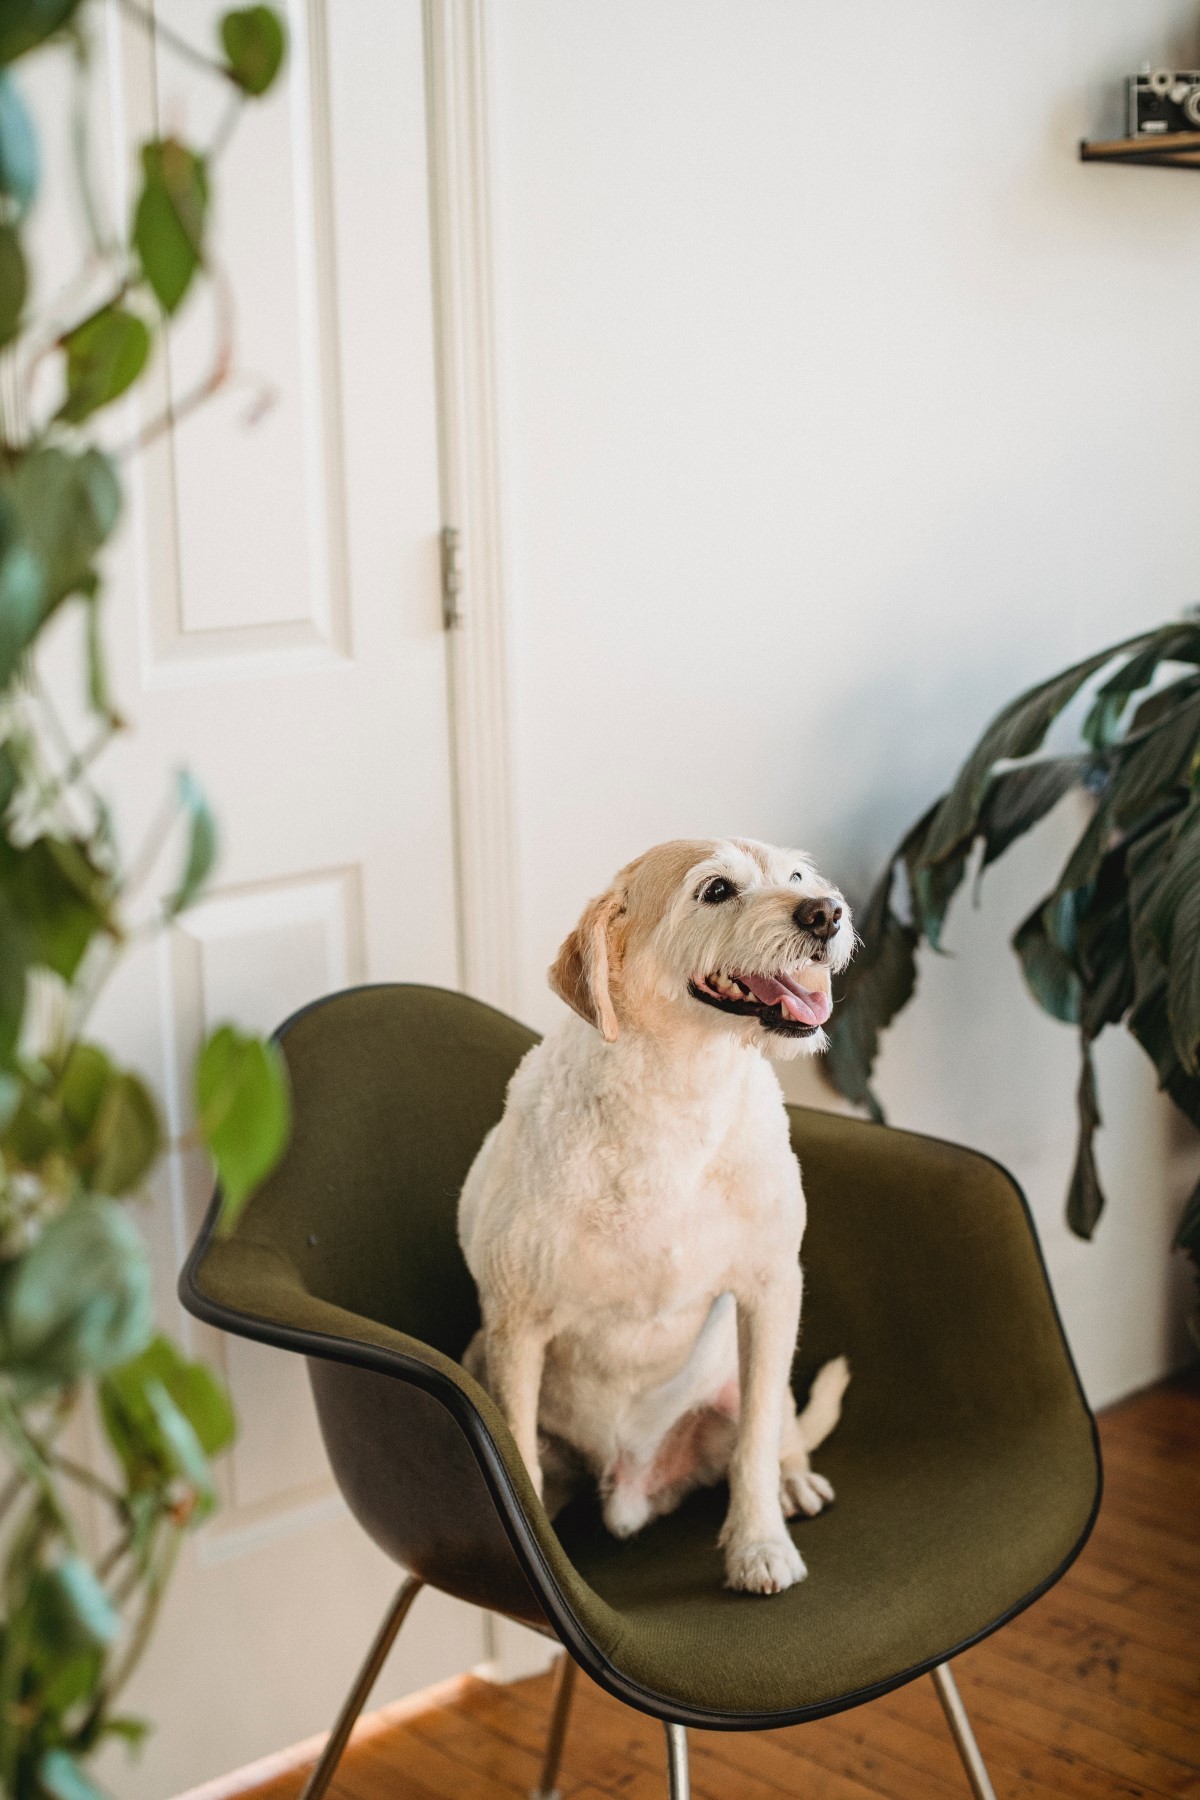 Muitos cães se sentem tristes e angustiados por ficarem sozinhos em casa, por isso, os programas de TV para pets podem ajudar a amenizar esses sentimentos (Foto: Pexels/ Samson Katt/ CreativeCommons)